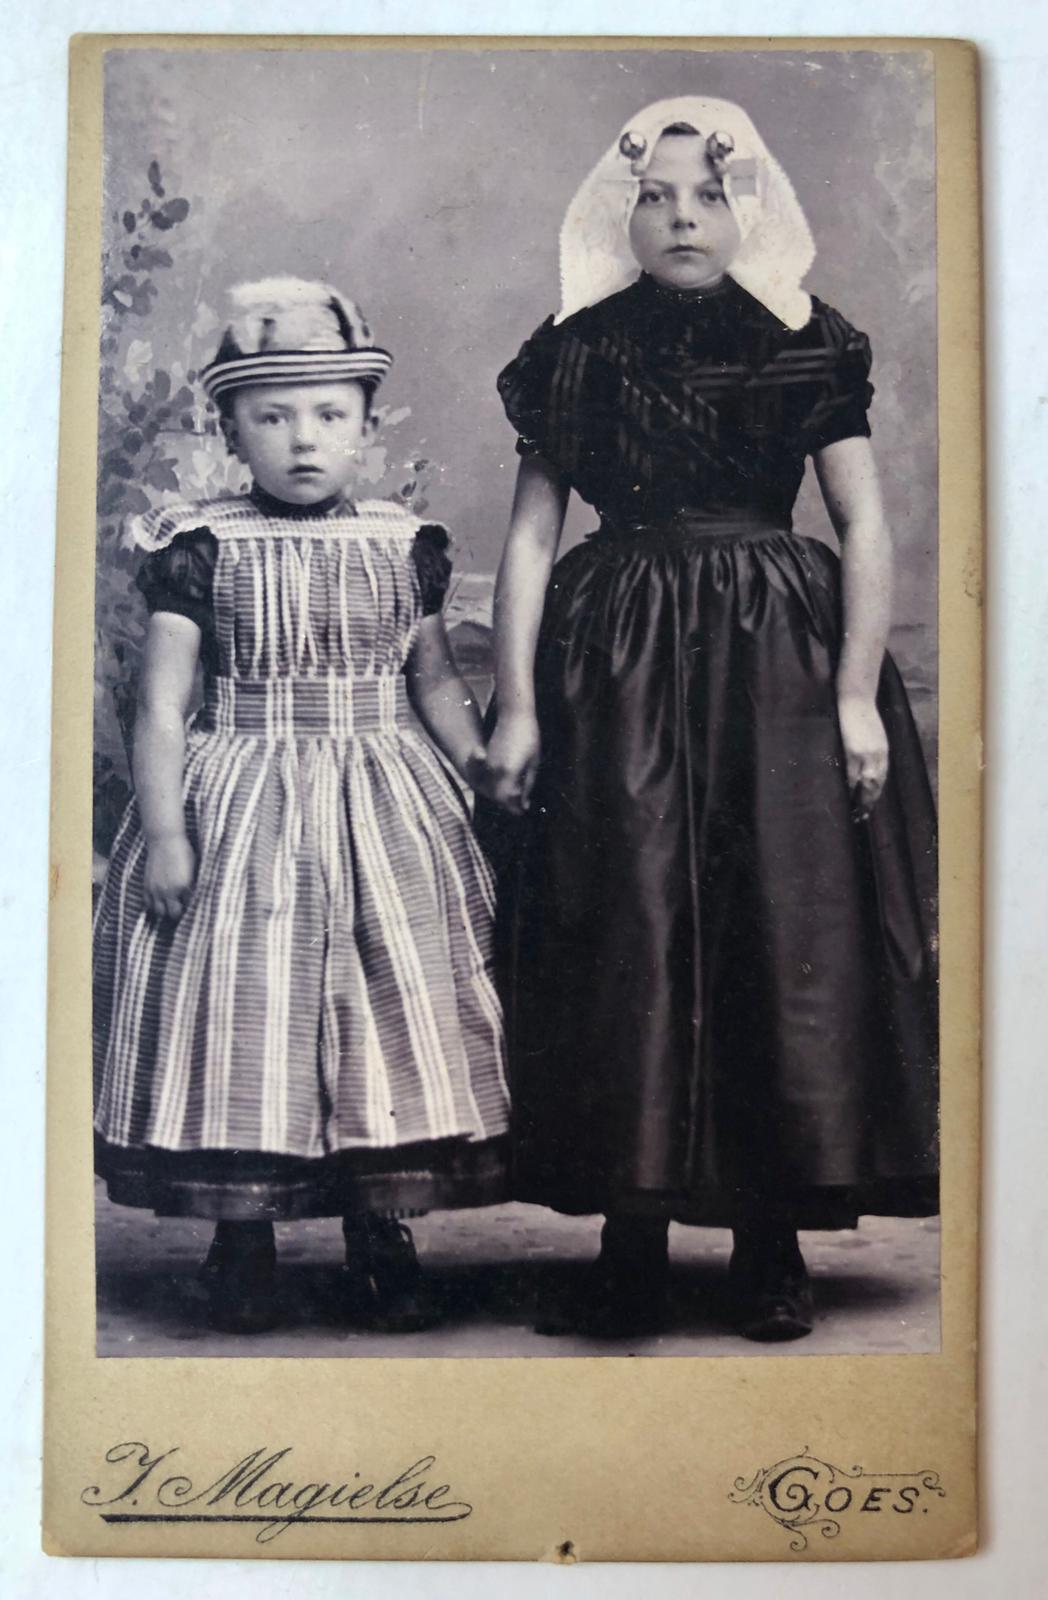 [Photography, carte visite, ca 1890] Portretfoto, carte-de-visite formaat, van Trui Wondergem, Goes, ca. 1890. In Zeeuwsche klederdracht.